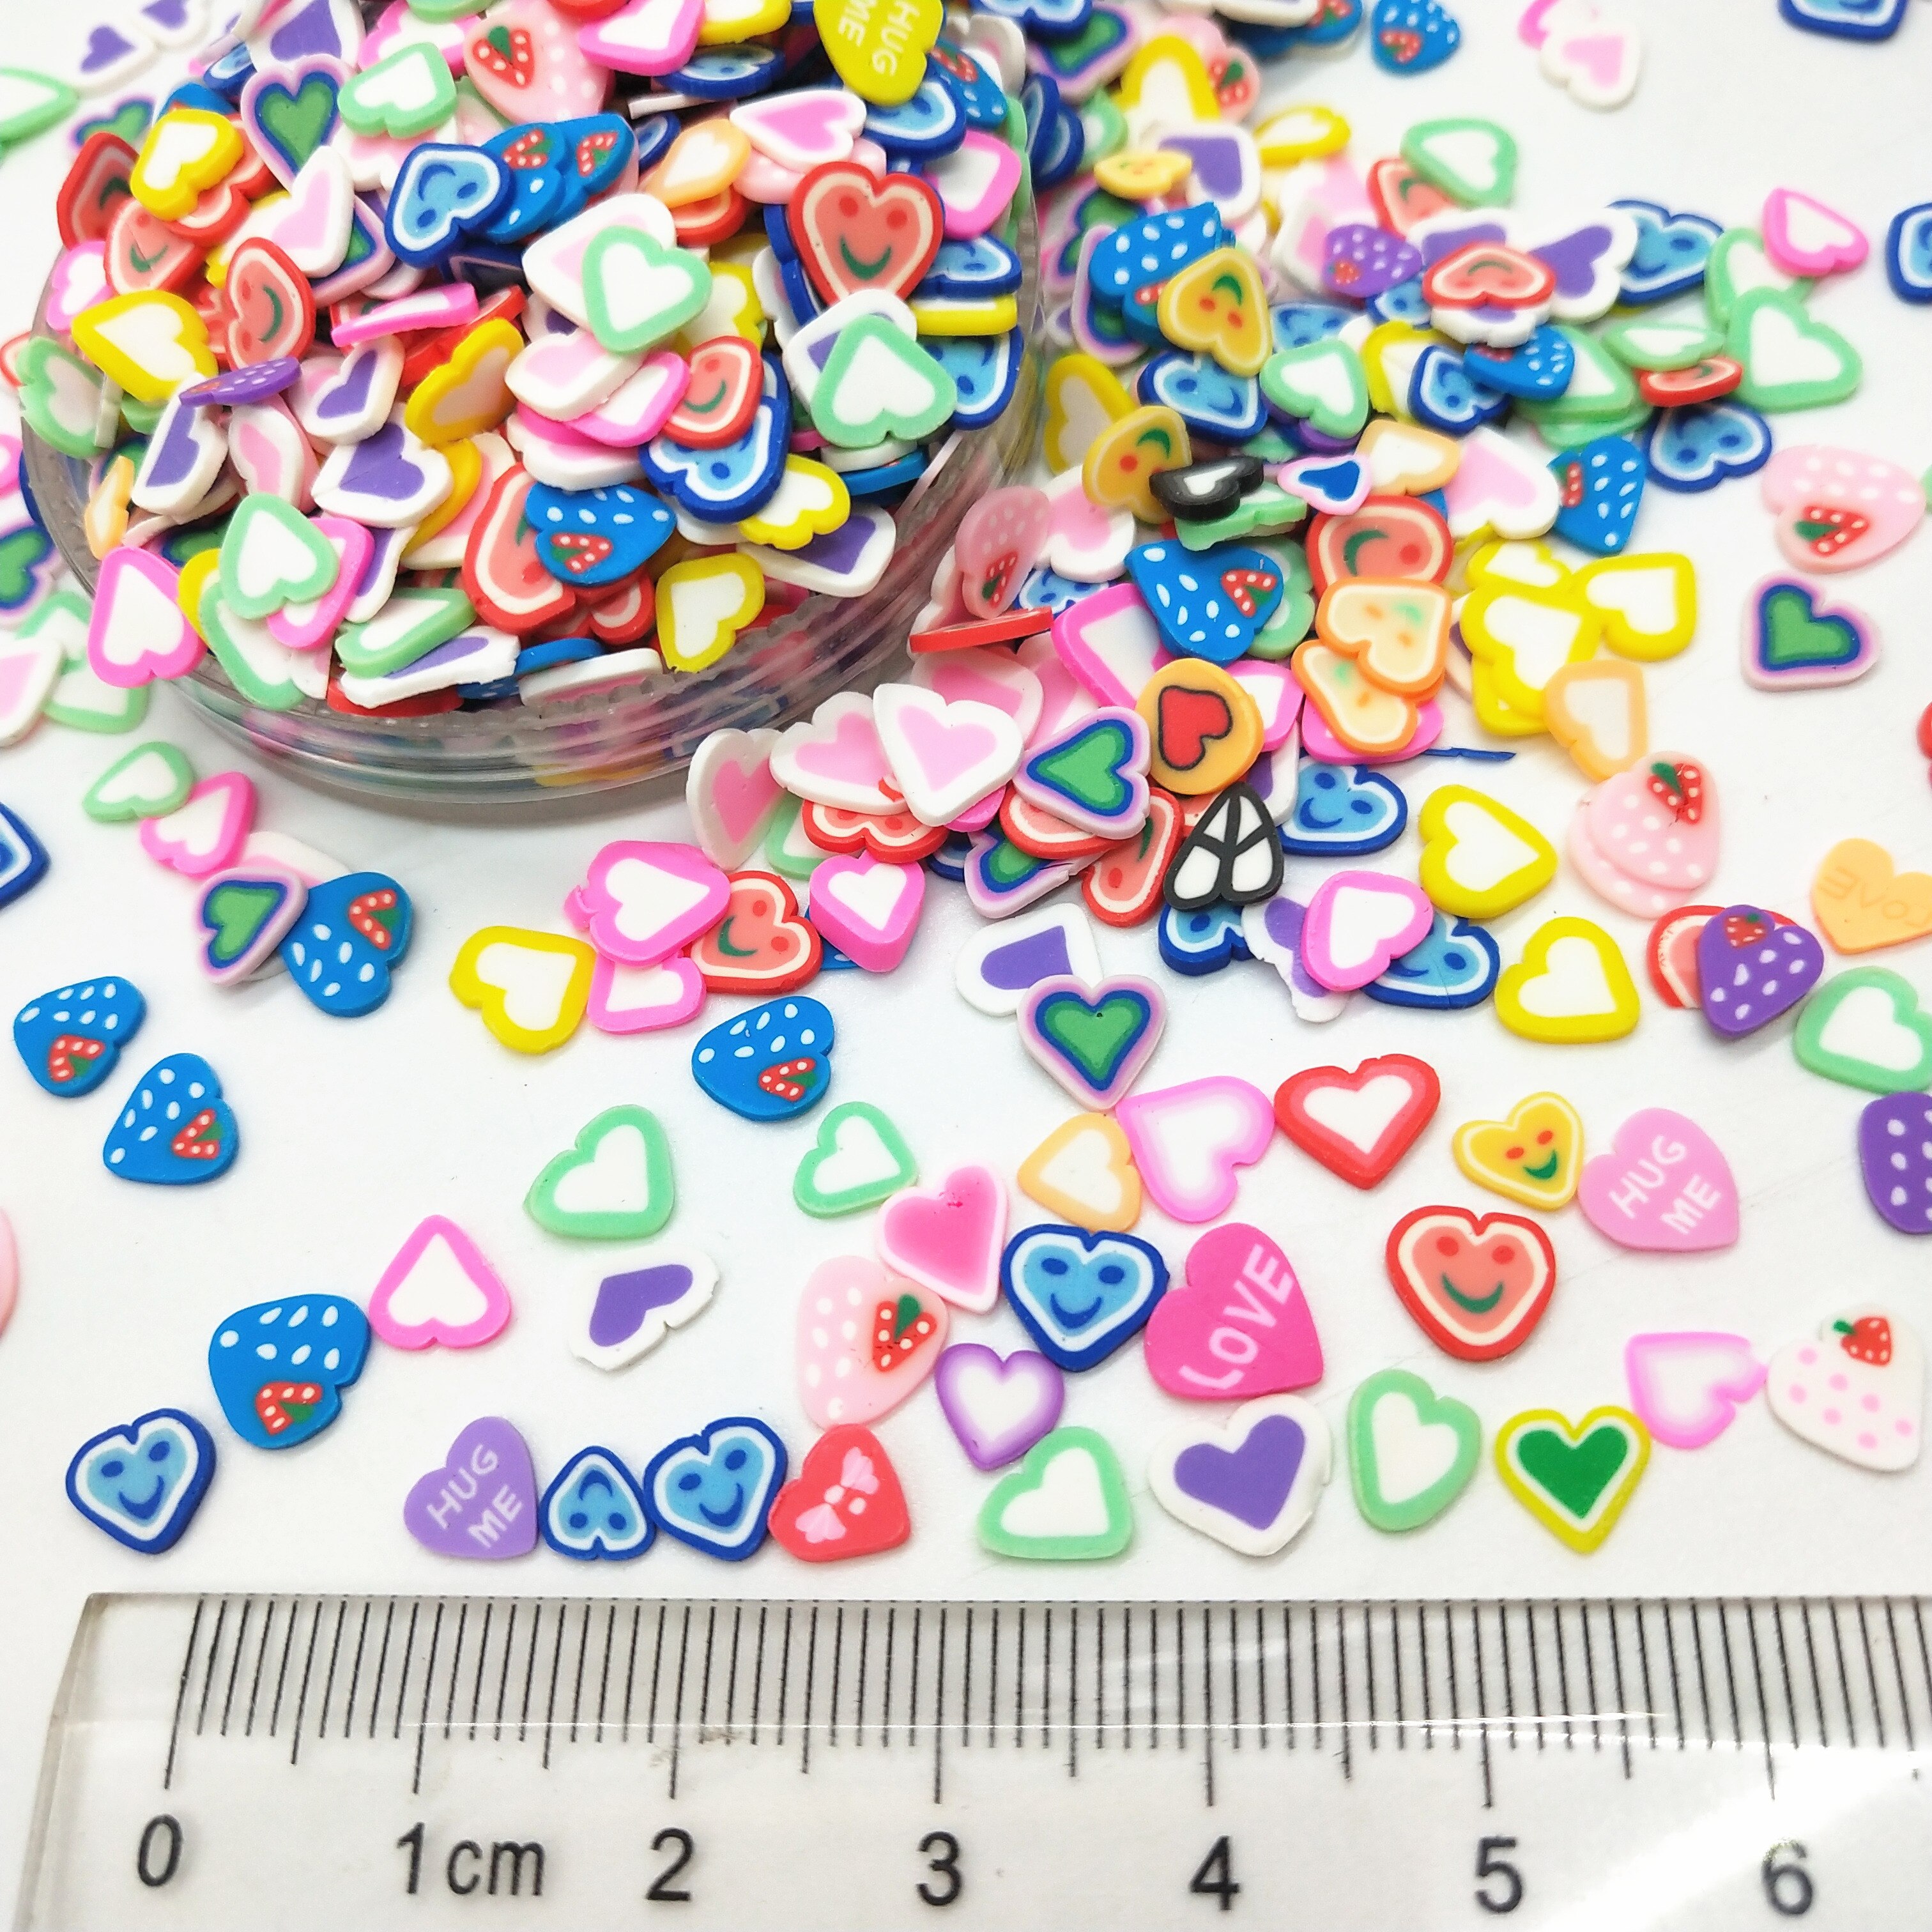 20g/ parti 5mm kærlighed hjerte polymer ler farverige hjerter til diy håndværk små søde tilbehør diverse designs